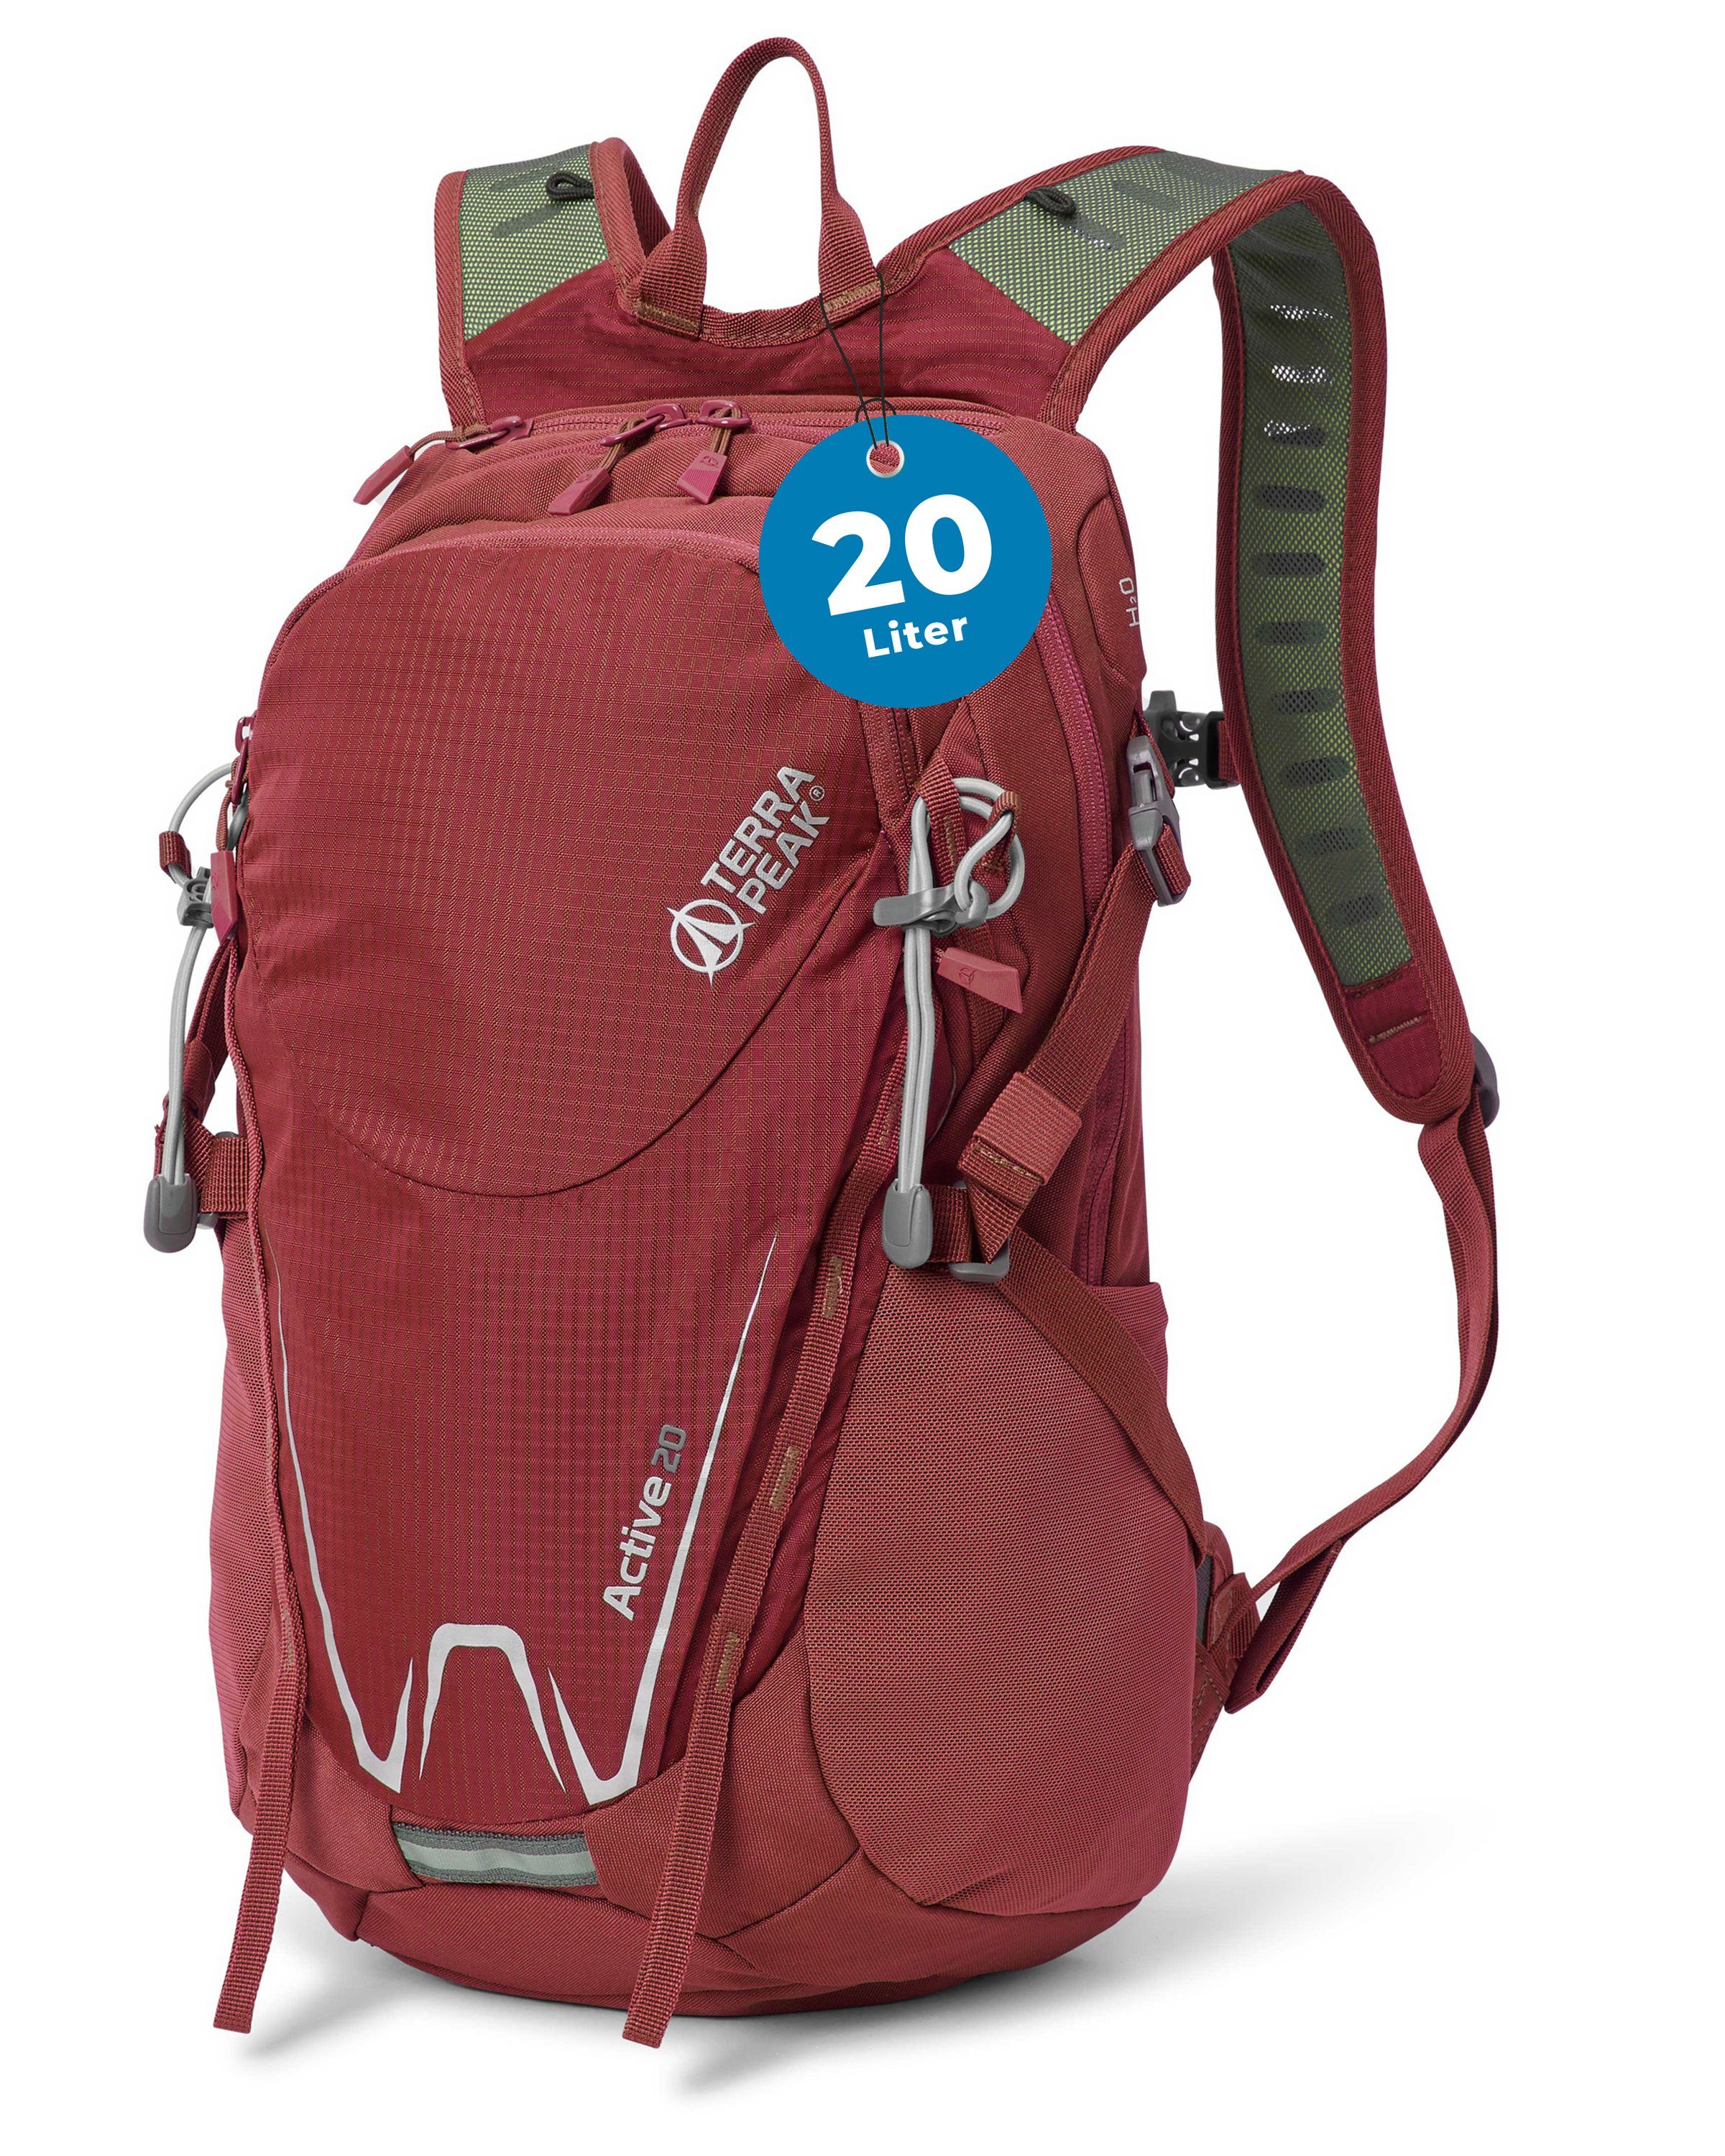 Terra Peak Sportrucksack Active 20, 20L klein mit YKK Reißverschluss Trekkingrucksack mit Hüftgurt Rot | Daypacks